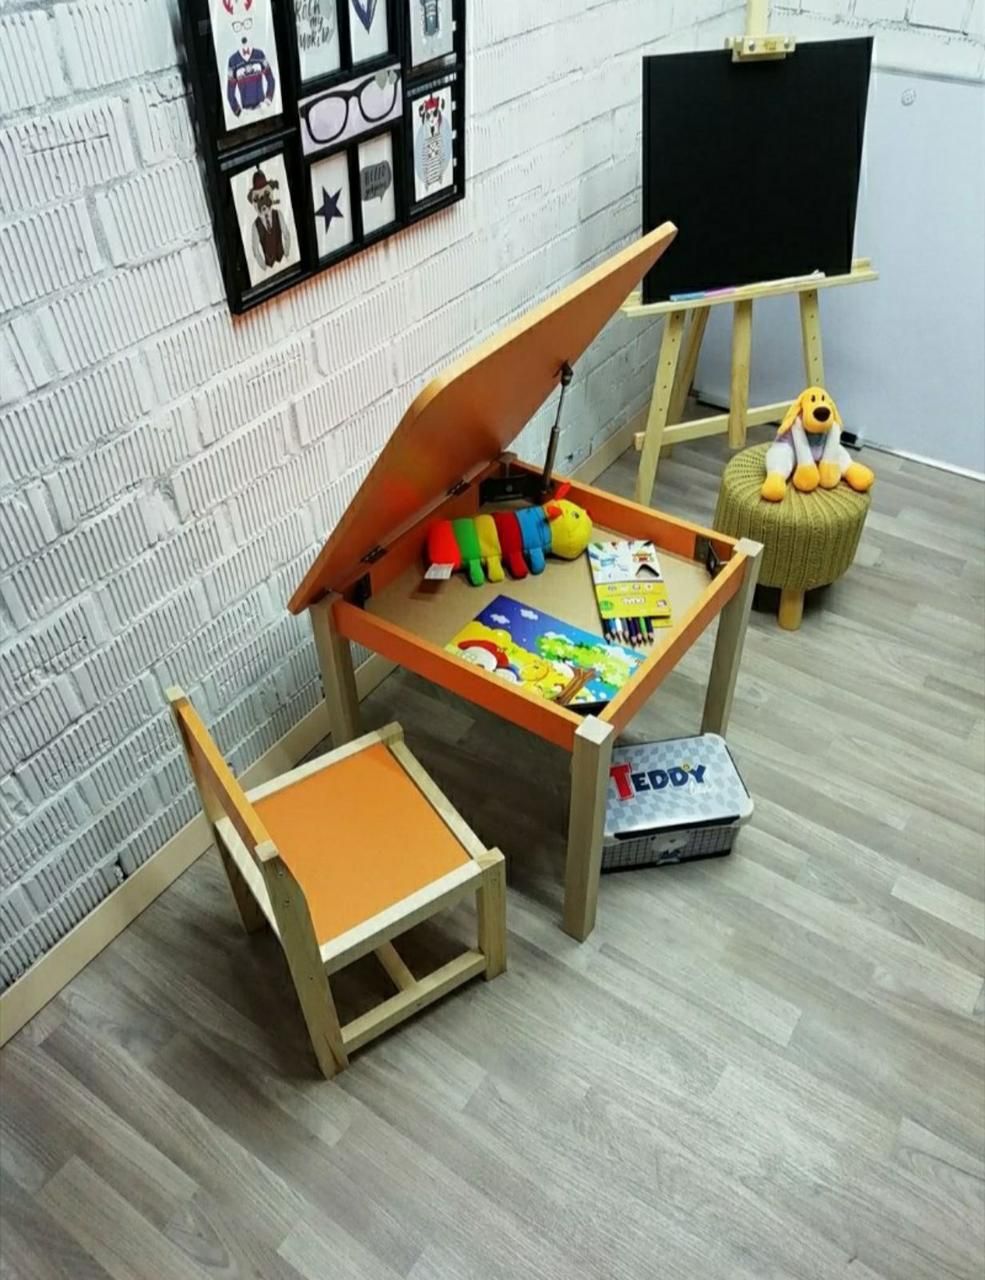 Дитячий стіл-мольберт помаранчевий і 1 стілець